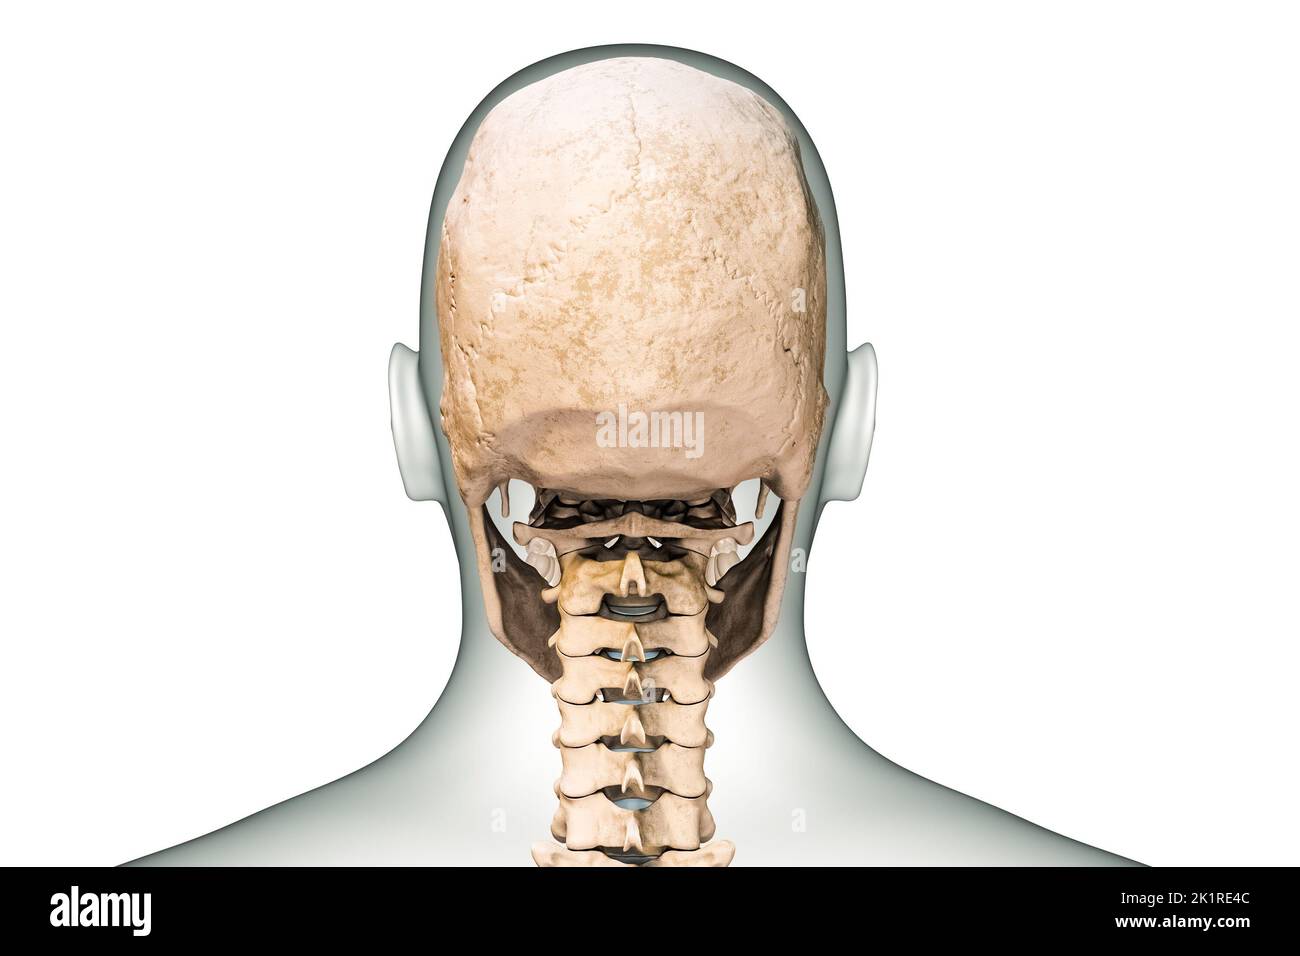 Vista posteriore o posteriore del cranio umano o delle ossa della testa con vertebre cervicali e contorni del corpo 3D che rendono l'illustrazione isolata su sfondo bianco. Foto Stock